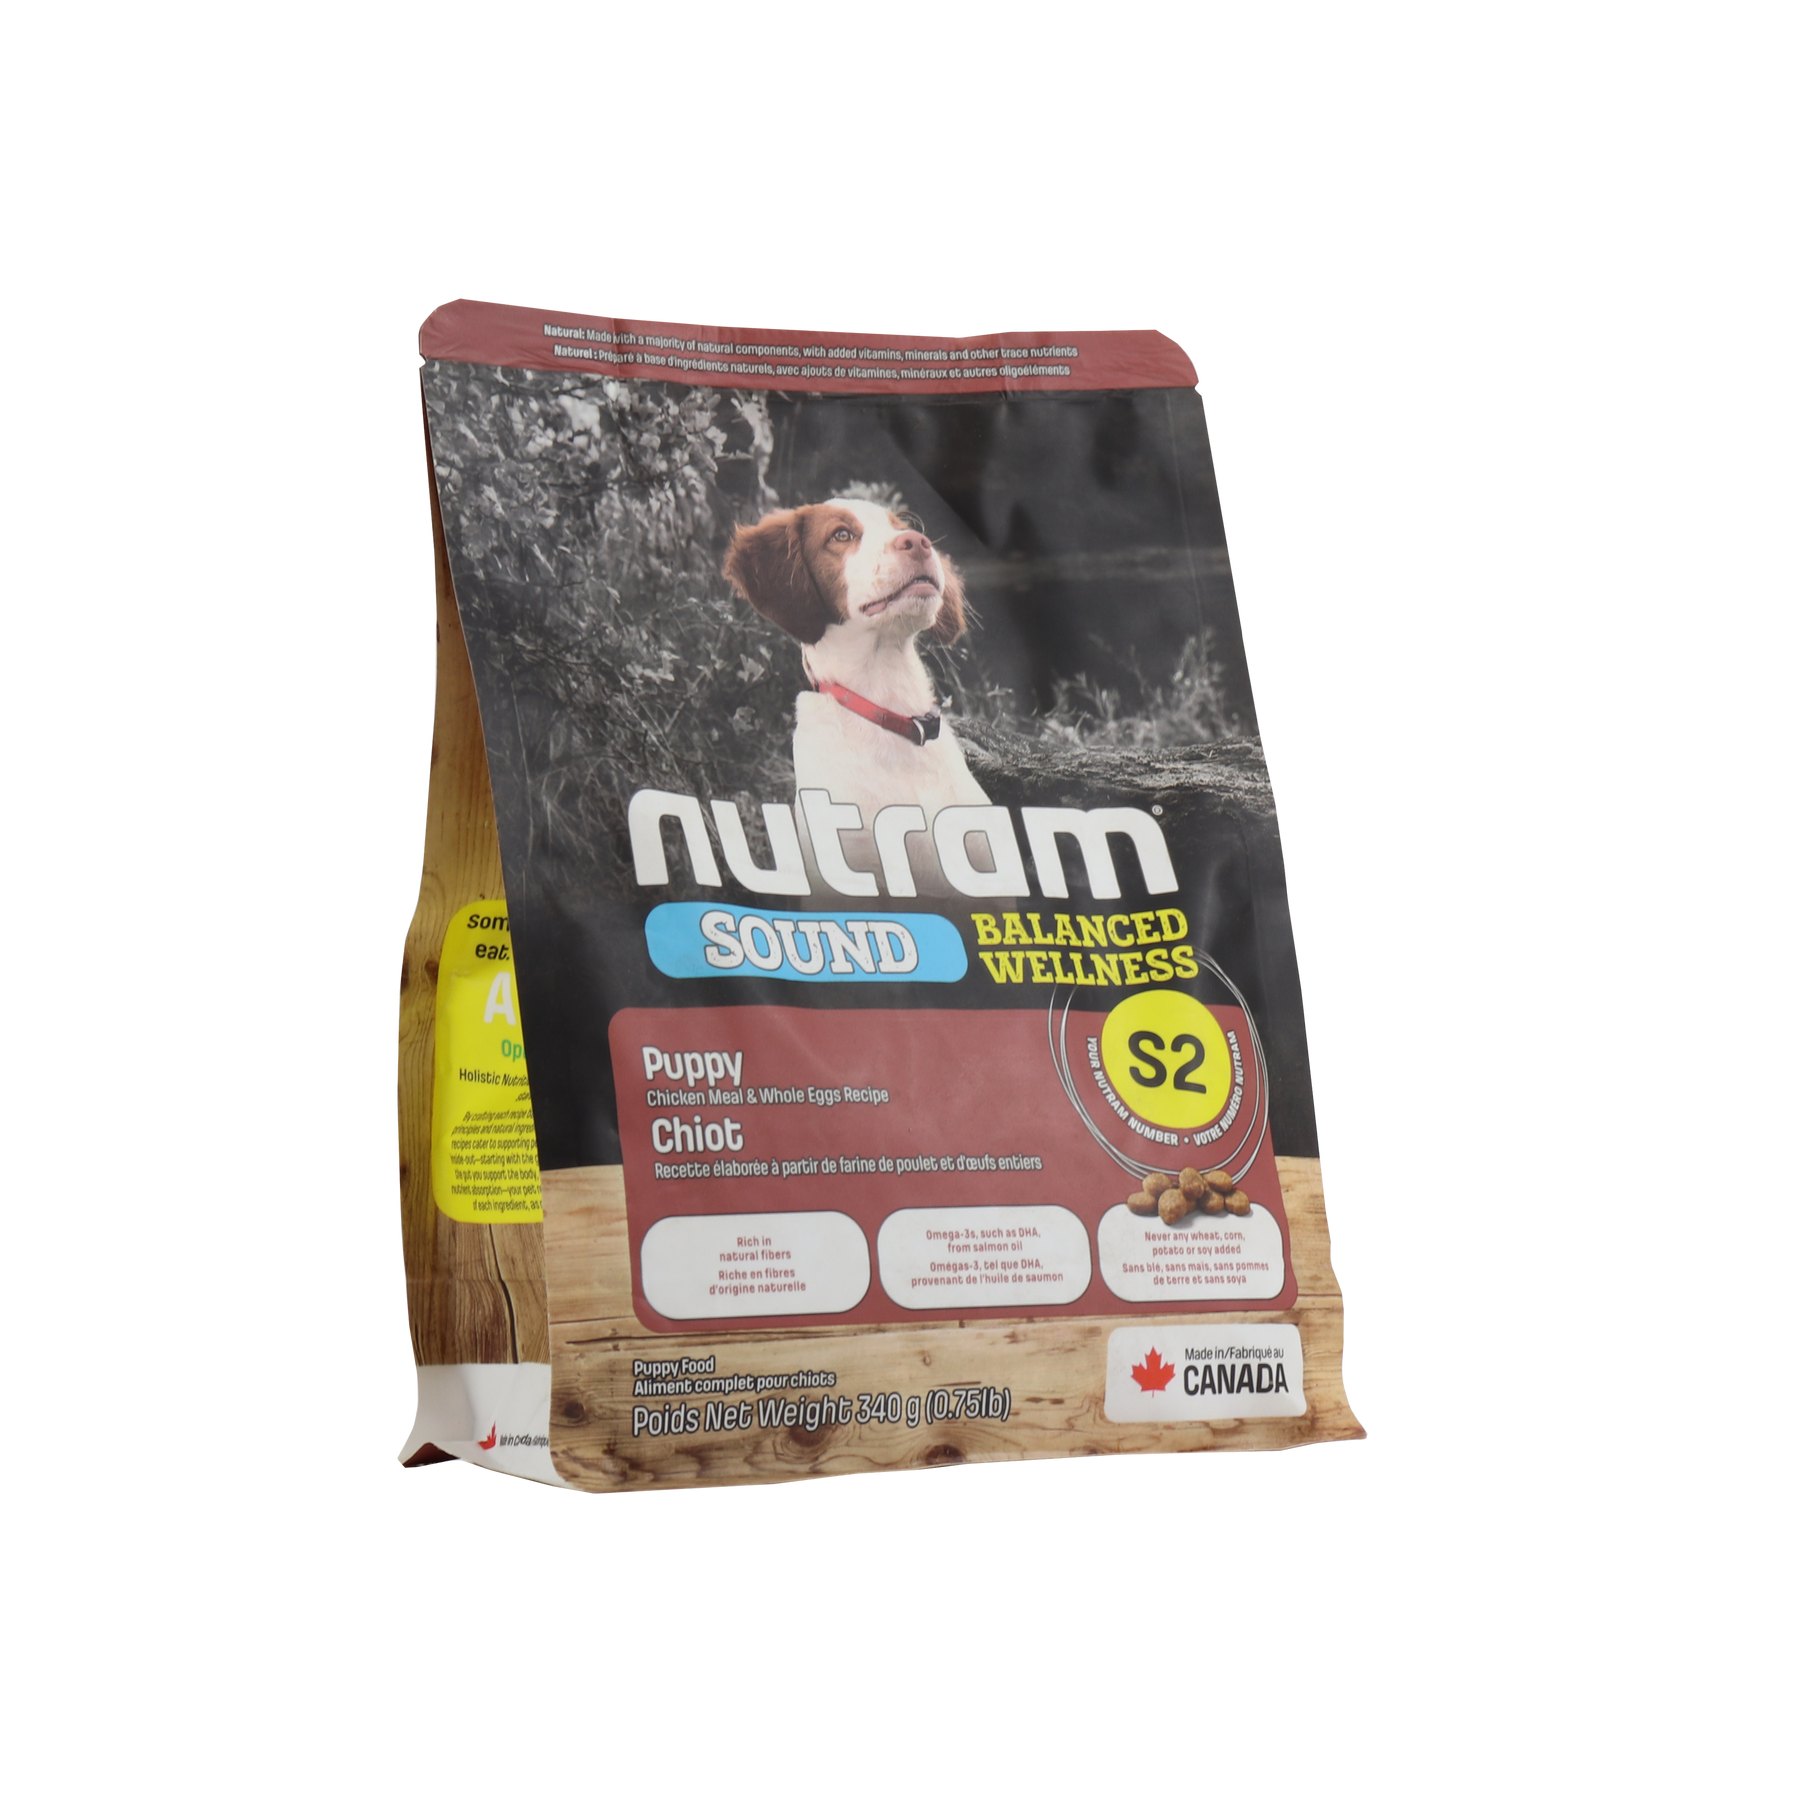 NUTRAM Sound Balanced Wellness Puppy холістик корм для цуценят 340 г